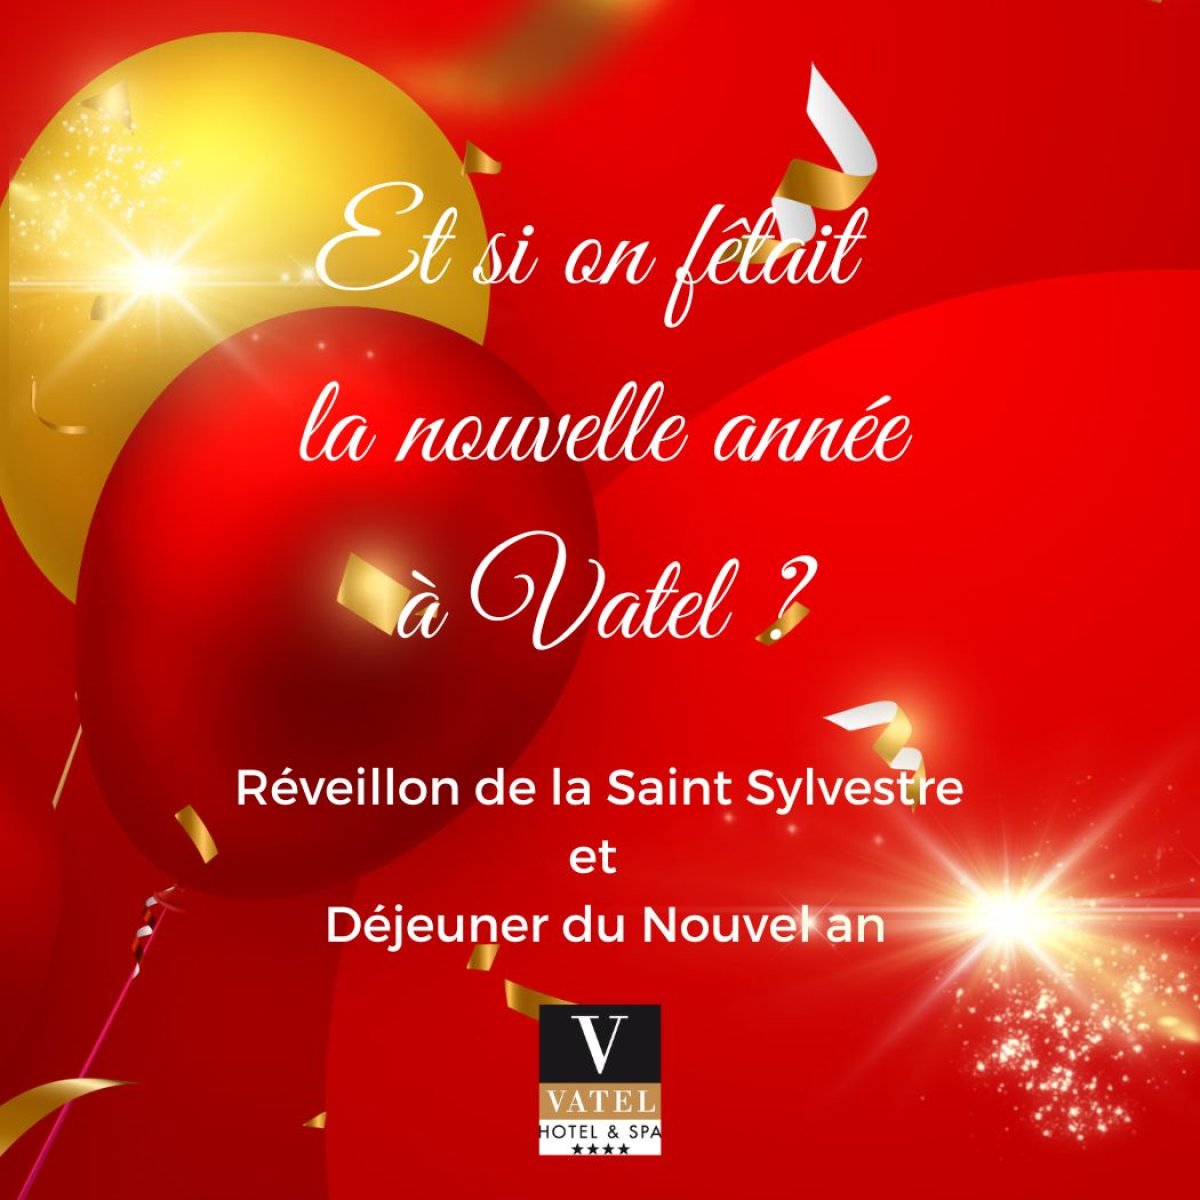 Réveillon de la St Sylvestre et Nouvel An à Vatel - Hotels Vatel France